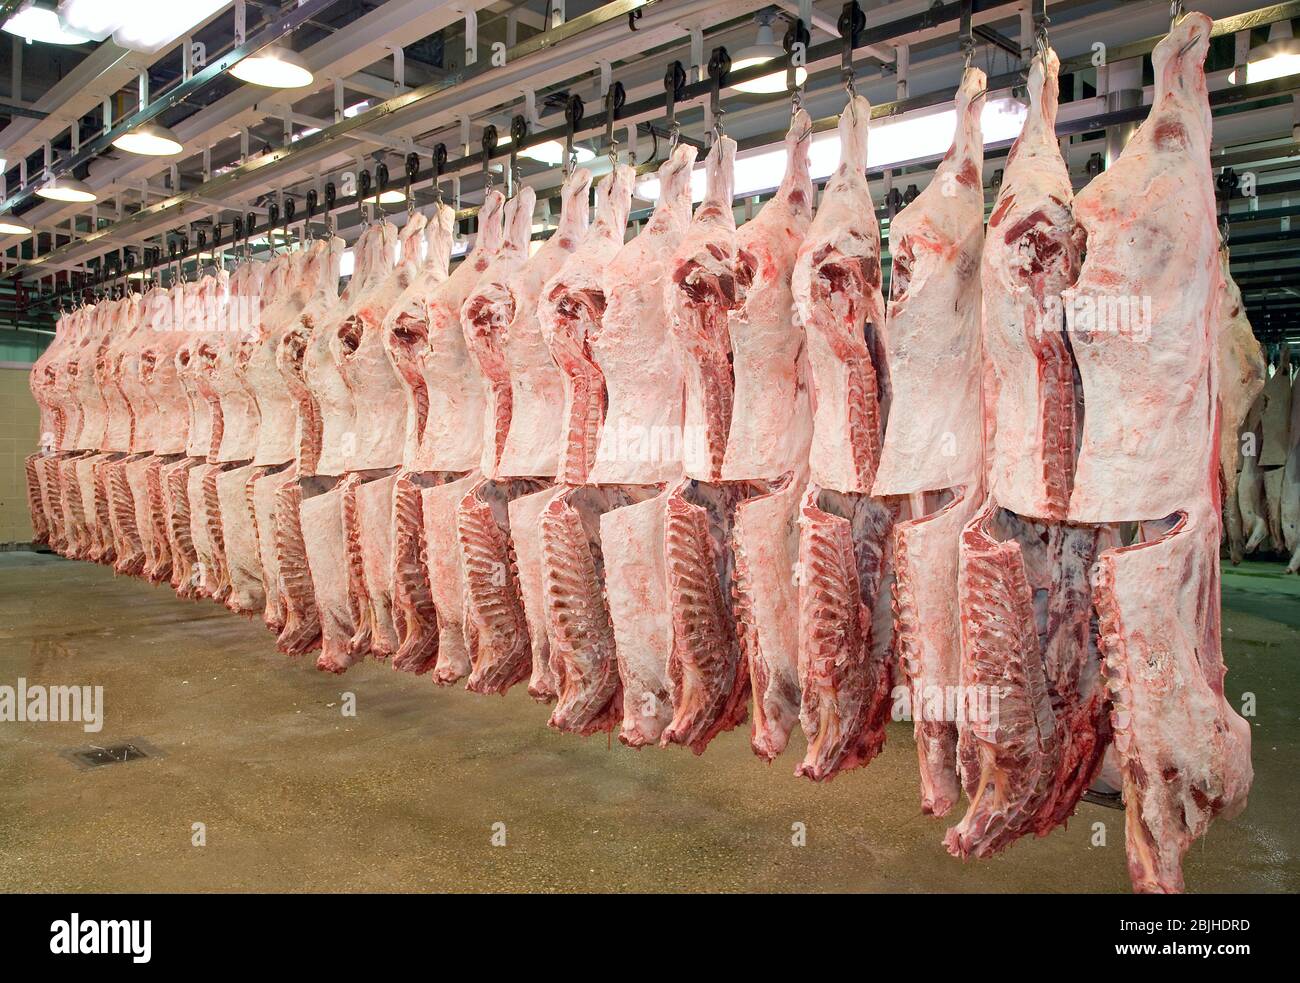 Carcasse di carni bovine fresche macellate appese in un frigorifero dell'impianto di trasformazione delle carni. L'occhio del lombo è esposto per determinare la qualità. Foto Stock